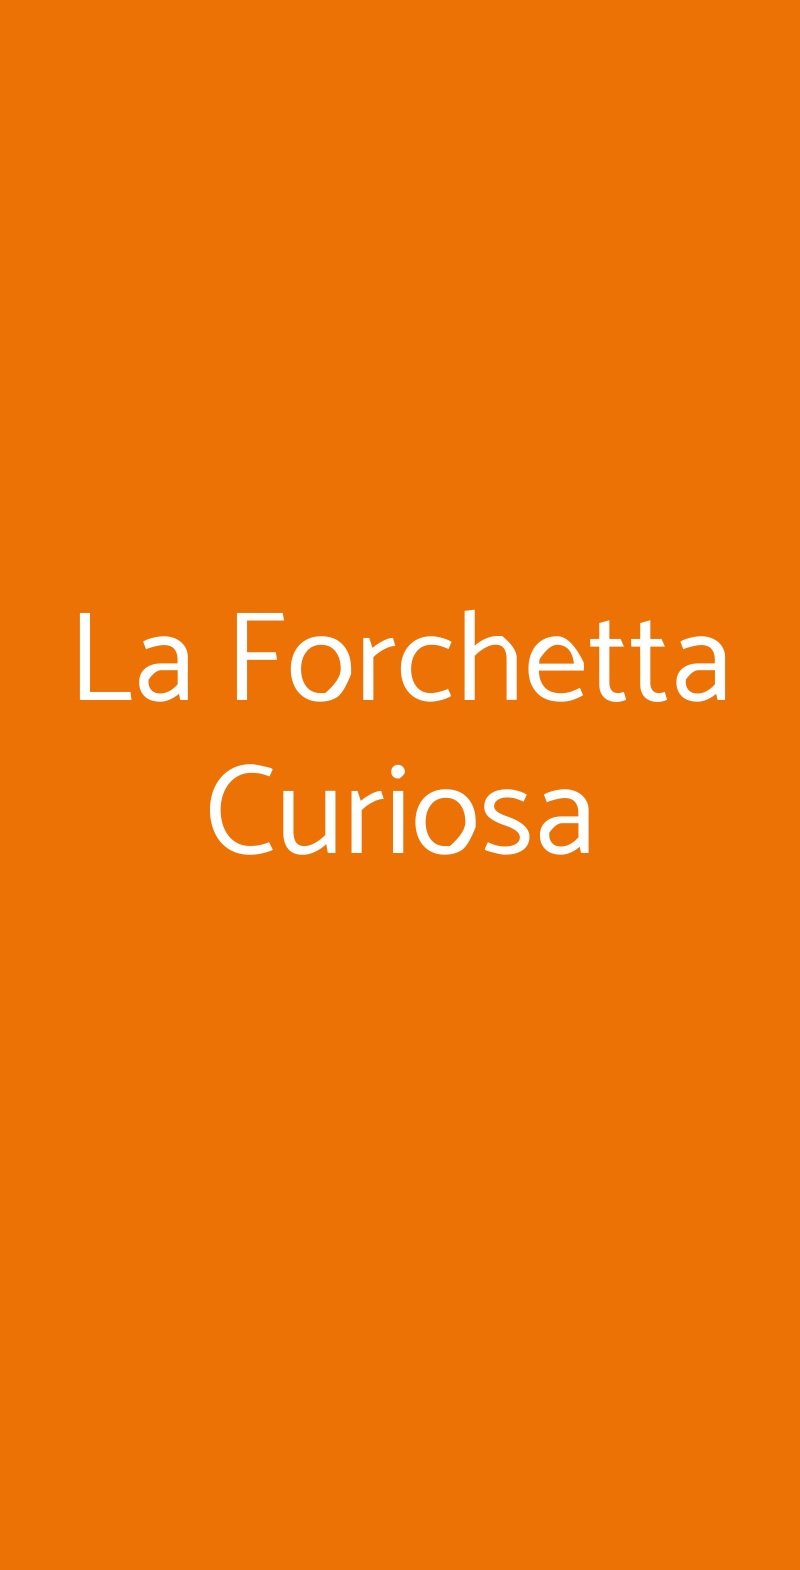 La Forchetta Curiosa Genova menù 1 pagina